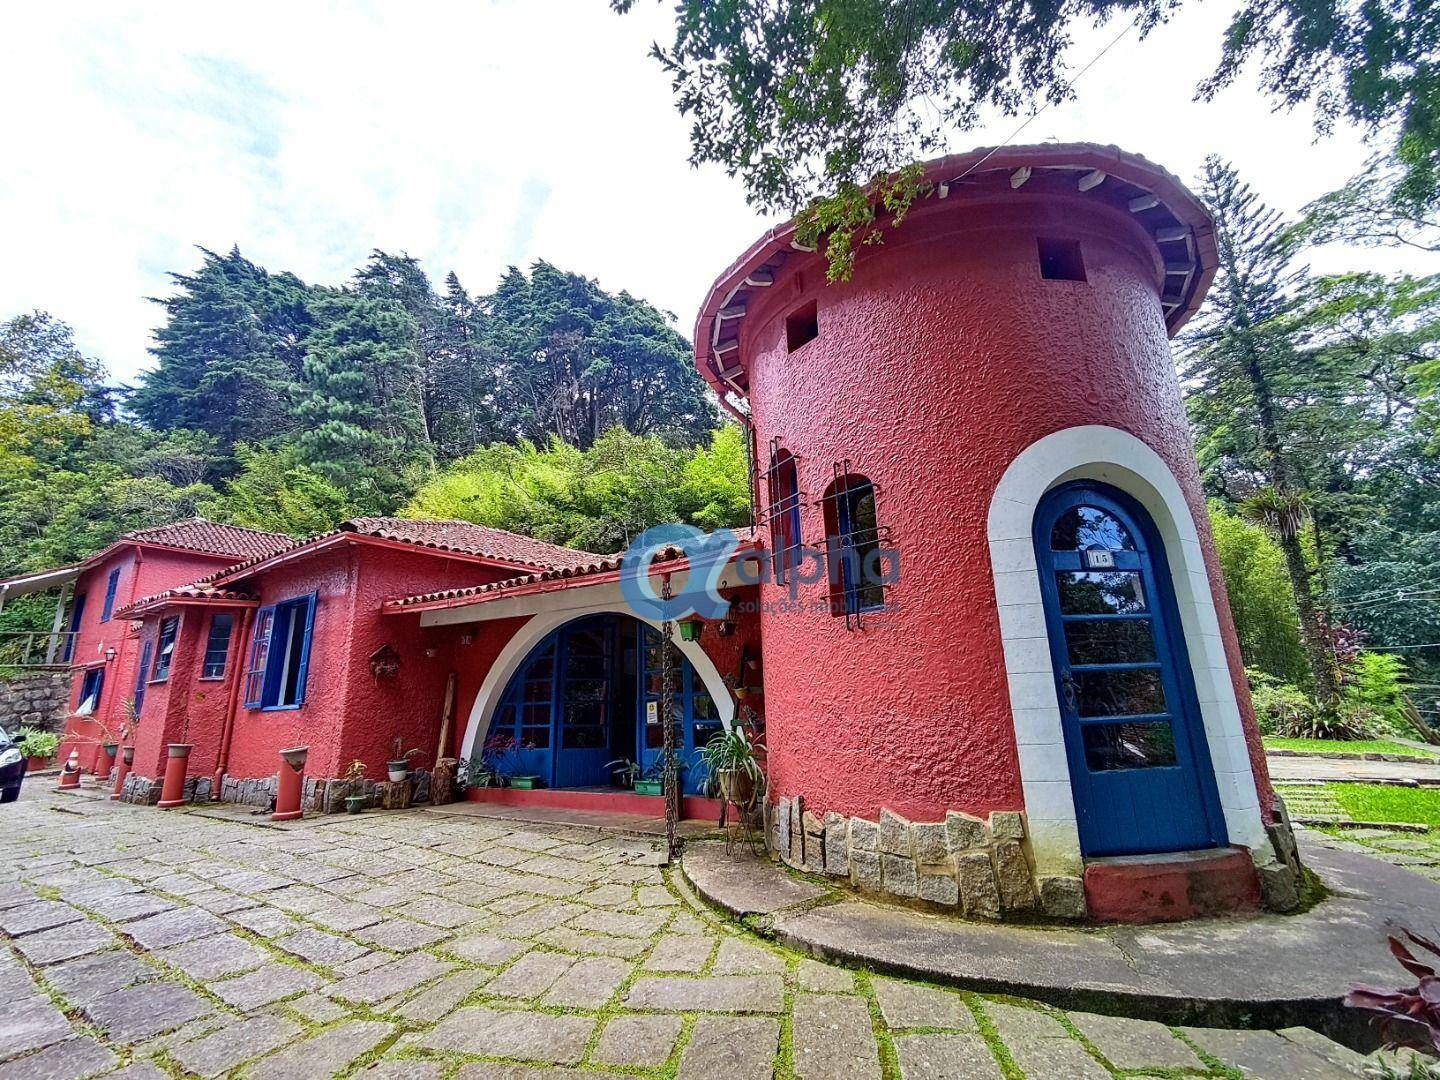 Casa à venda em Quitandinha, Petrópolis - RJ - Foto 1